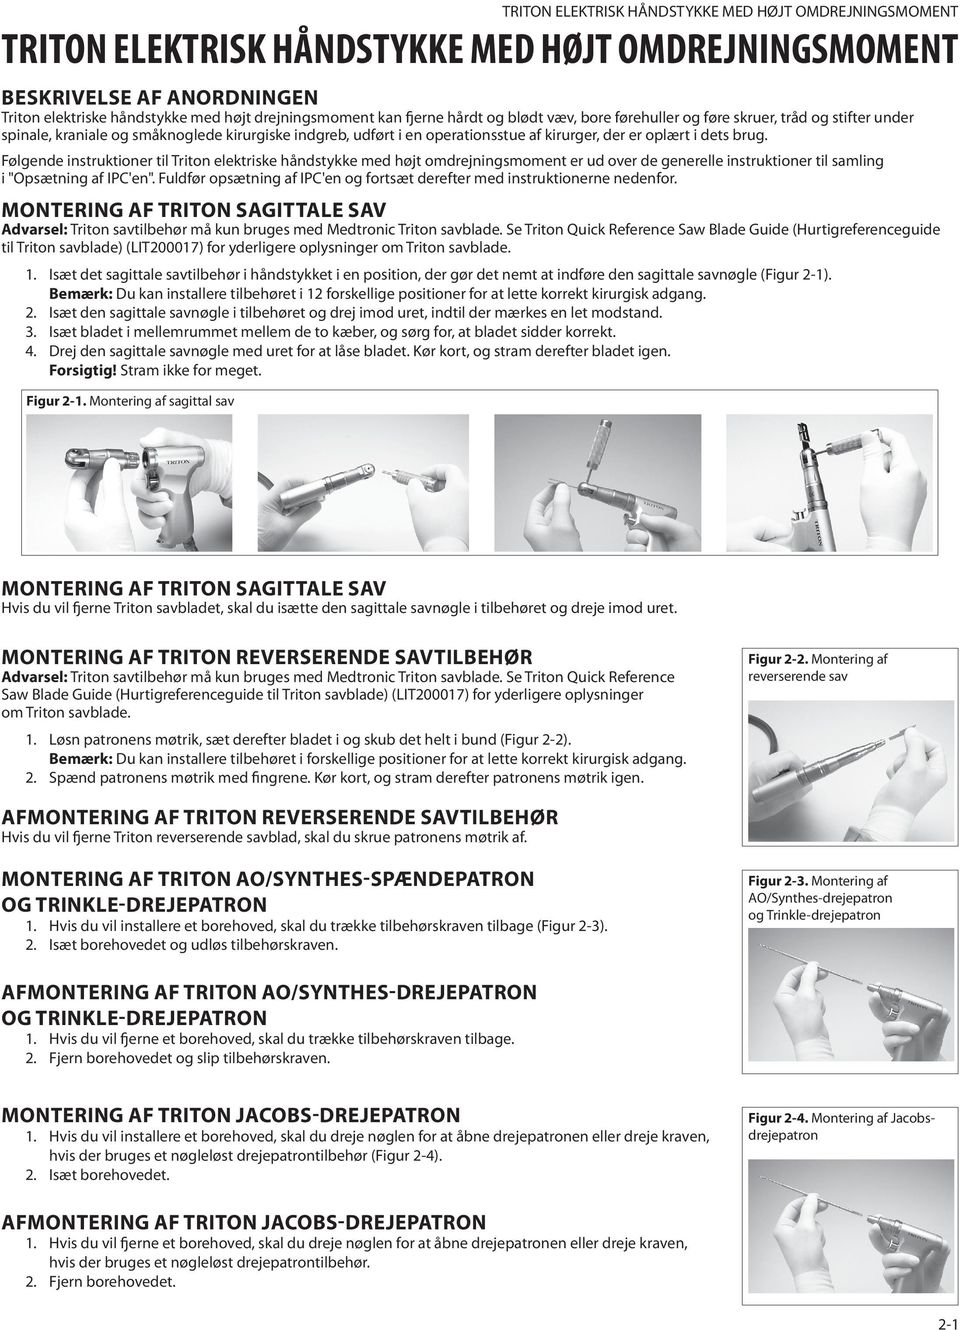 Følgende instruktioner til Triton elektriske håndstykke med højt omdrejningsmoment er ud over de generelle instruktioner til samling i "Opsætning af IPC'en".